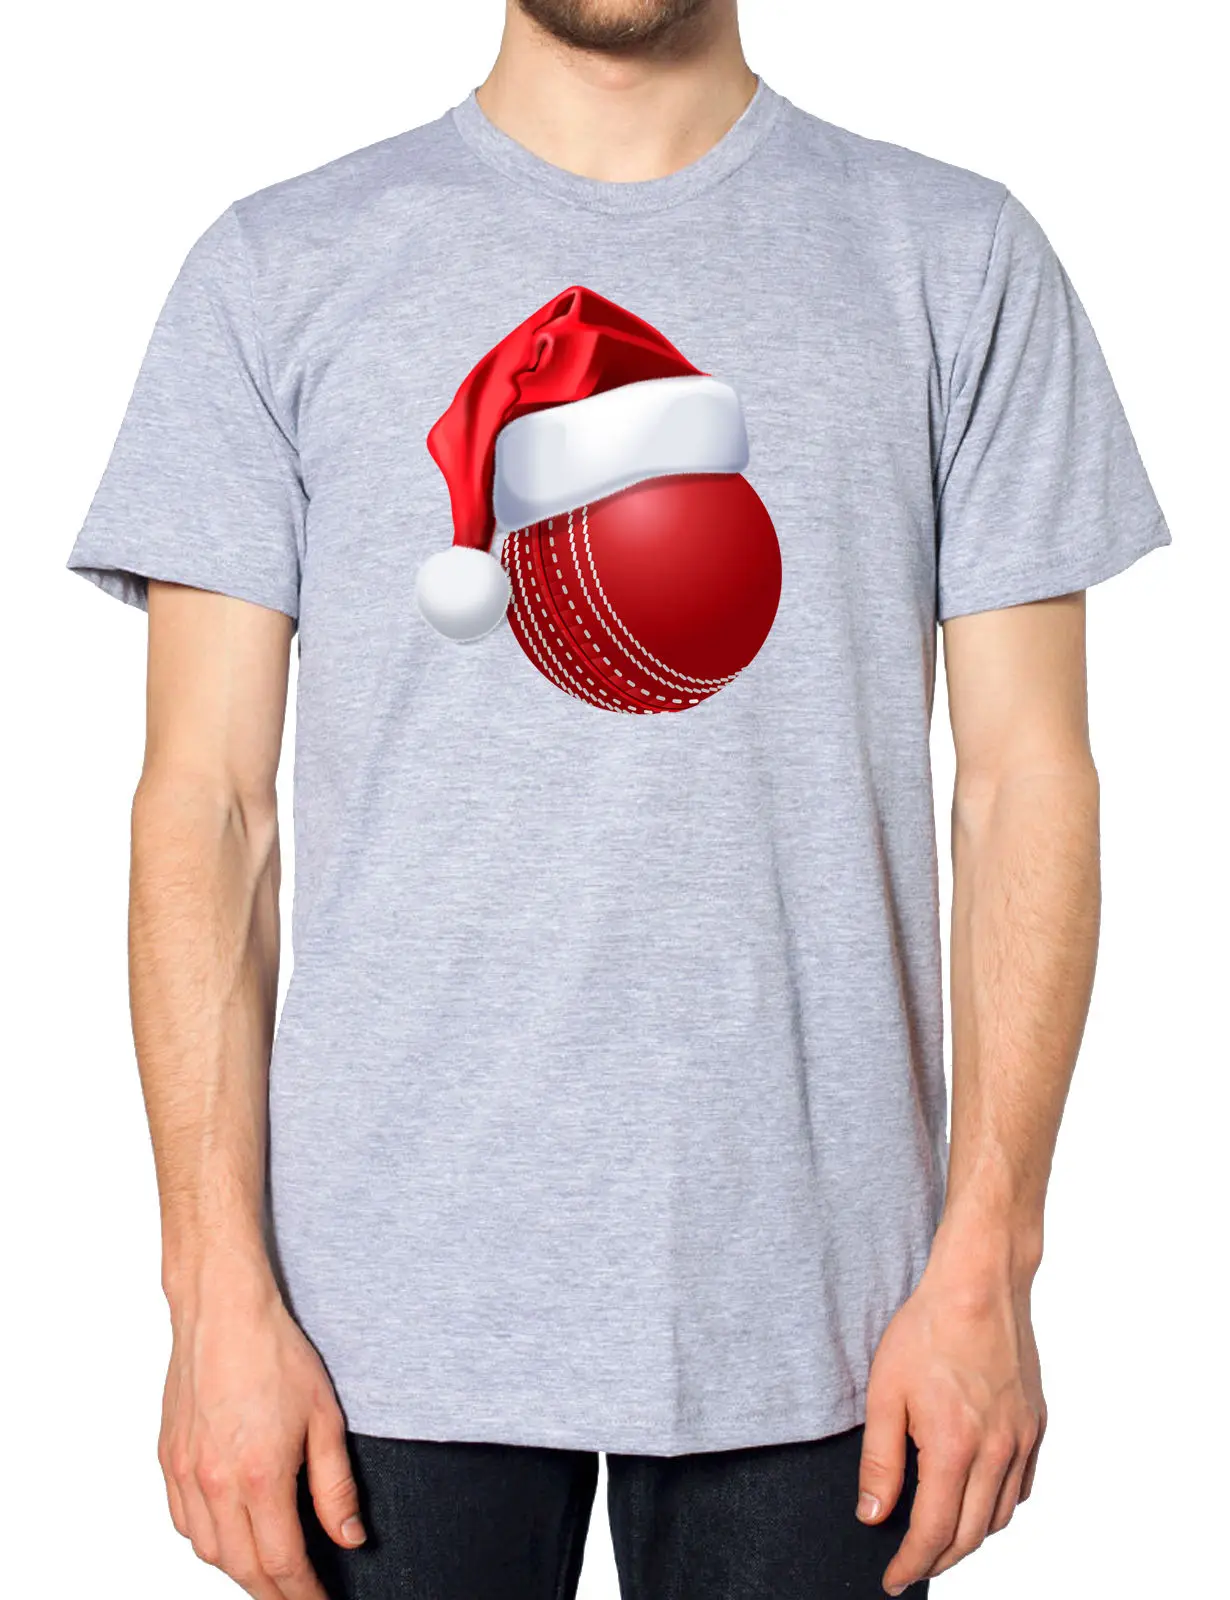 الكريكيت الكرة عيد الميلاد سانتا قبعة T قميص رياضي احتفالي الجدة نكتة هدية بارد عارضة فخر t قميص الرجال للجنسين جديد الأزياء